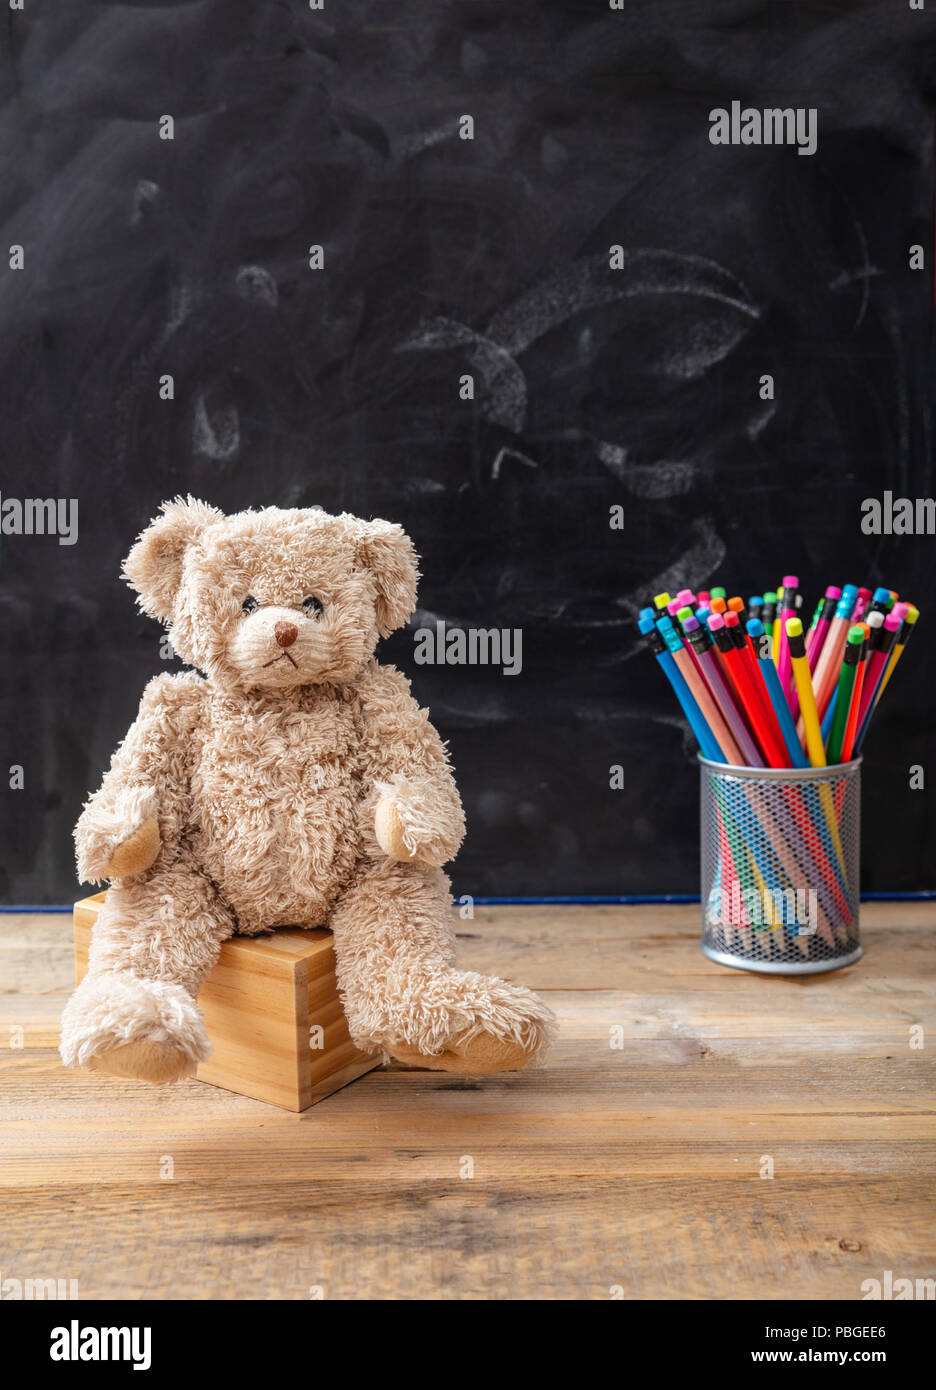 Si torna a scuola. Orsacchiotto di peluche e matite colorate su sfondo blackboard, spazio di copia Foto Stock